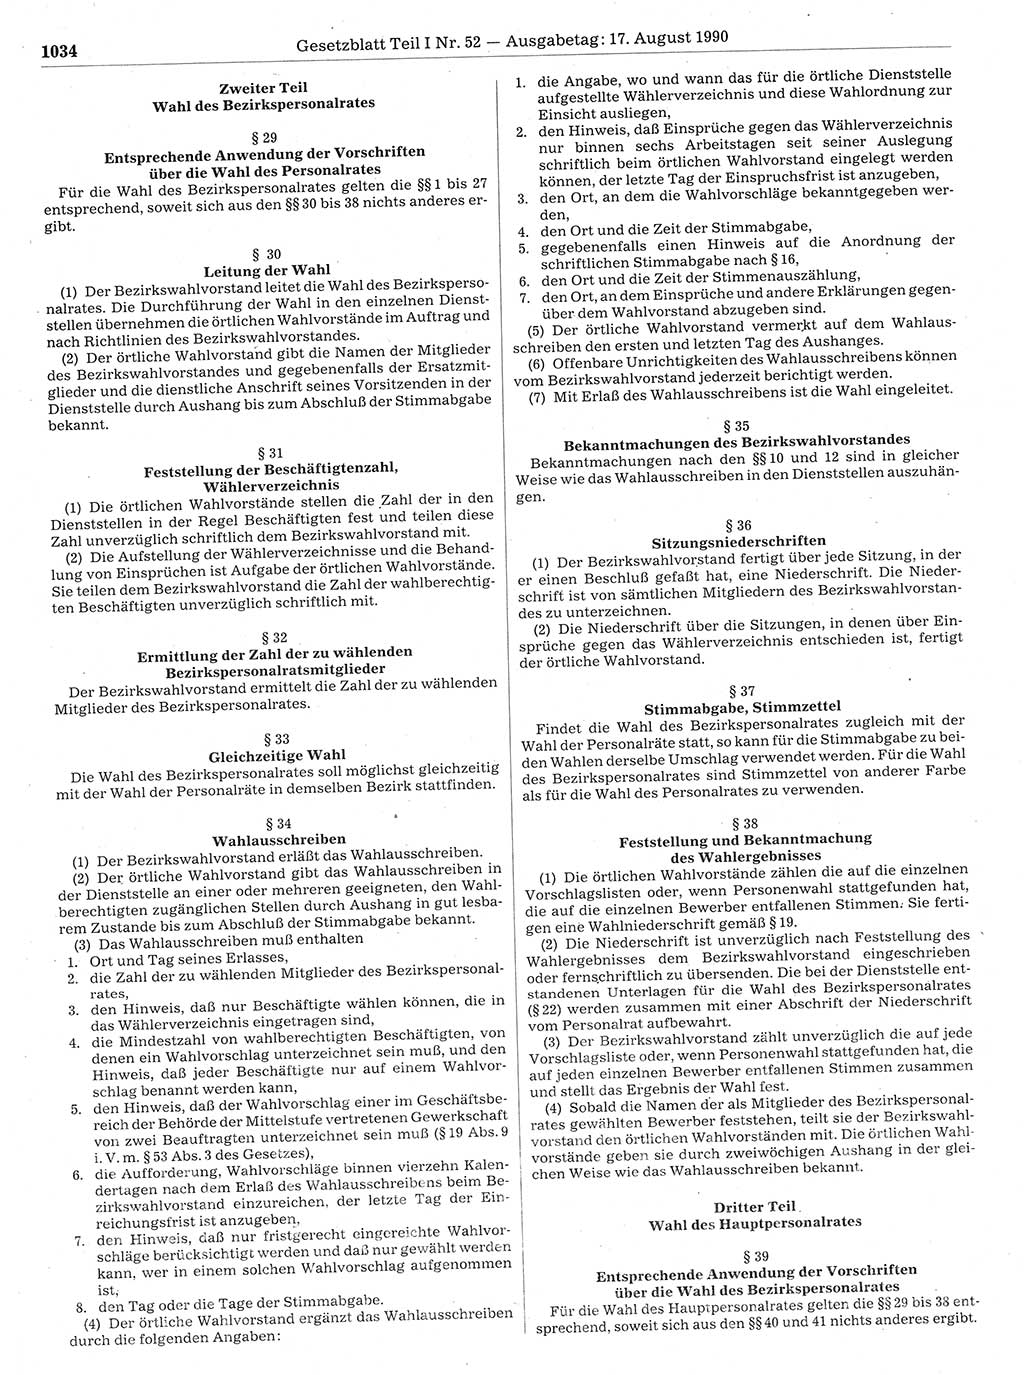 Gesetzblatt (GBl.) der Deutschen Demokratischen Republik (DDR) Teil Ⅰ 1990, Seite 1034 (GBl. DDR Ⅰ 1990, S. 1034)